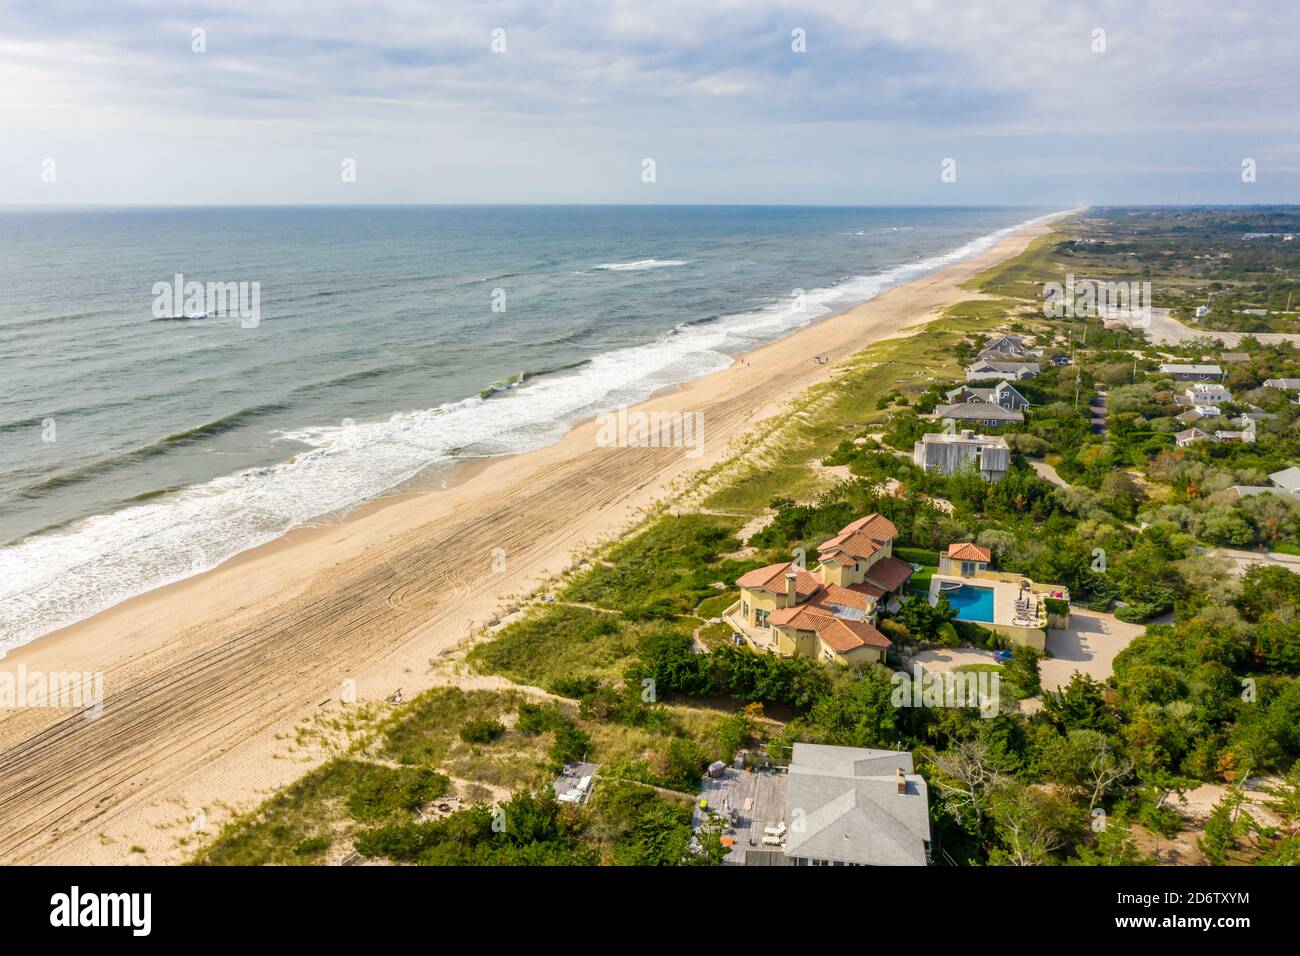 Luftbild des Strandes von Amagansett und des Atlantischen Ozeans Stockfoto